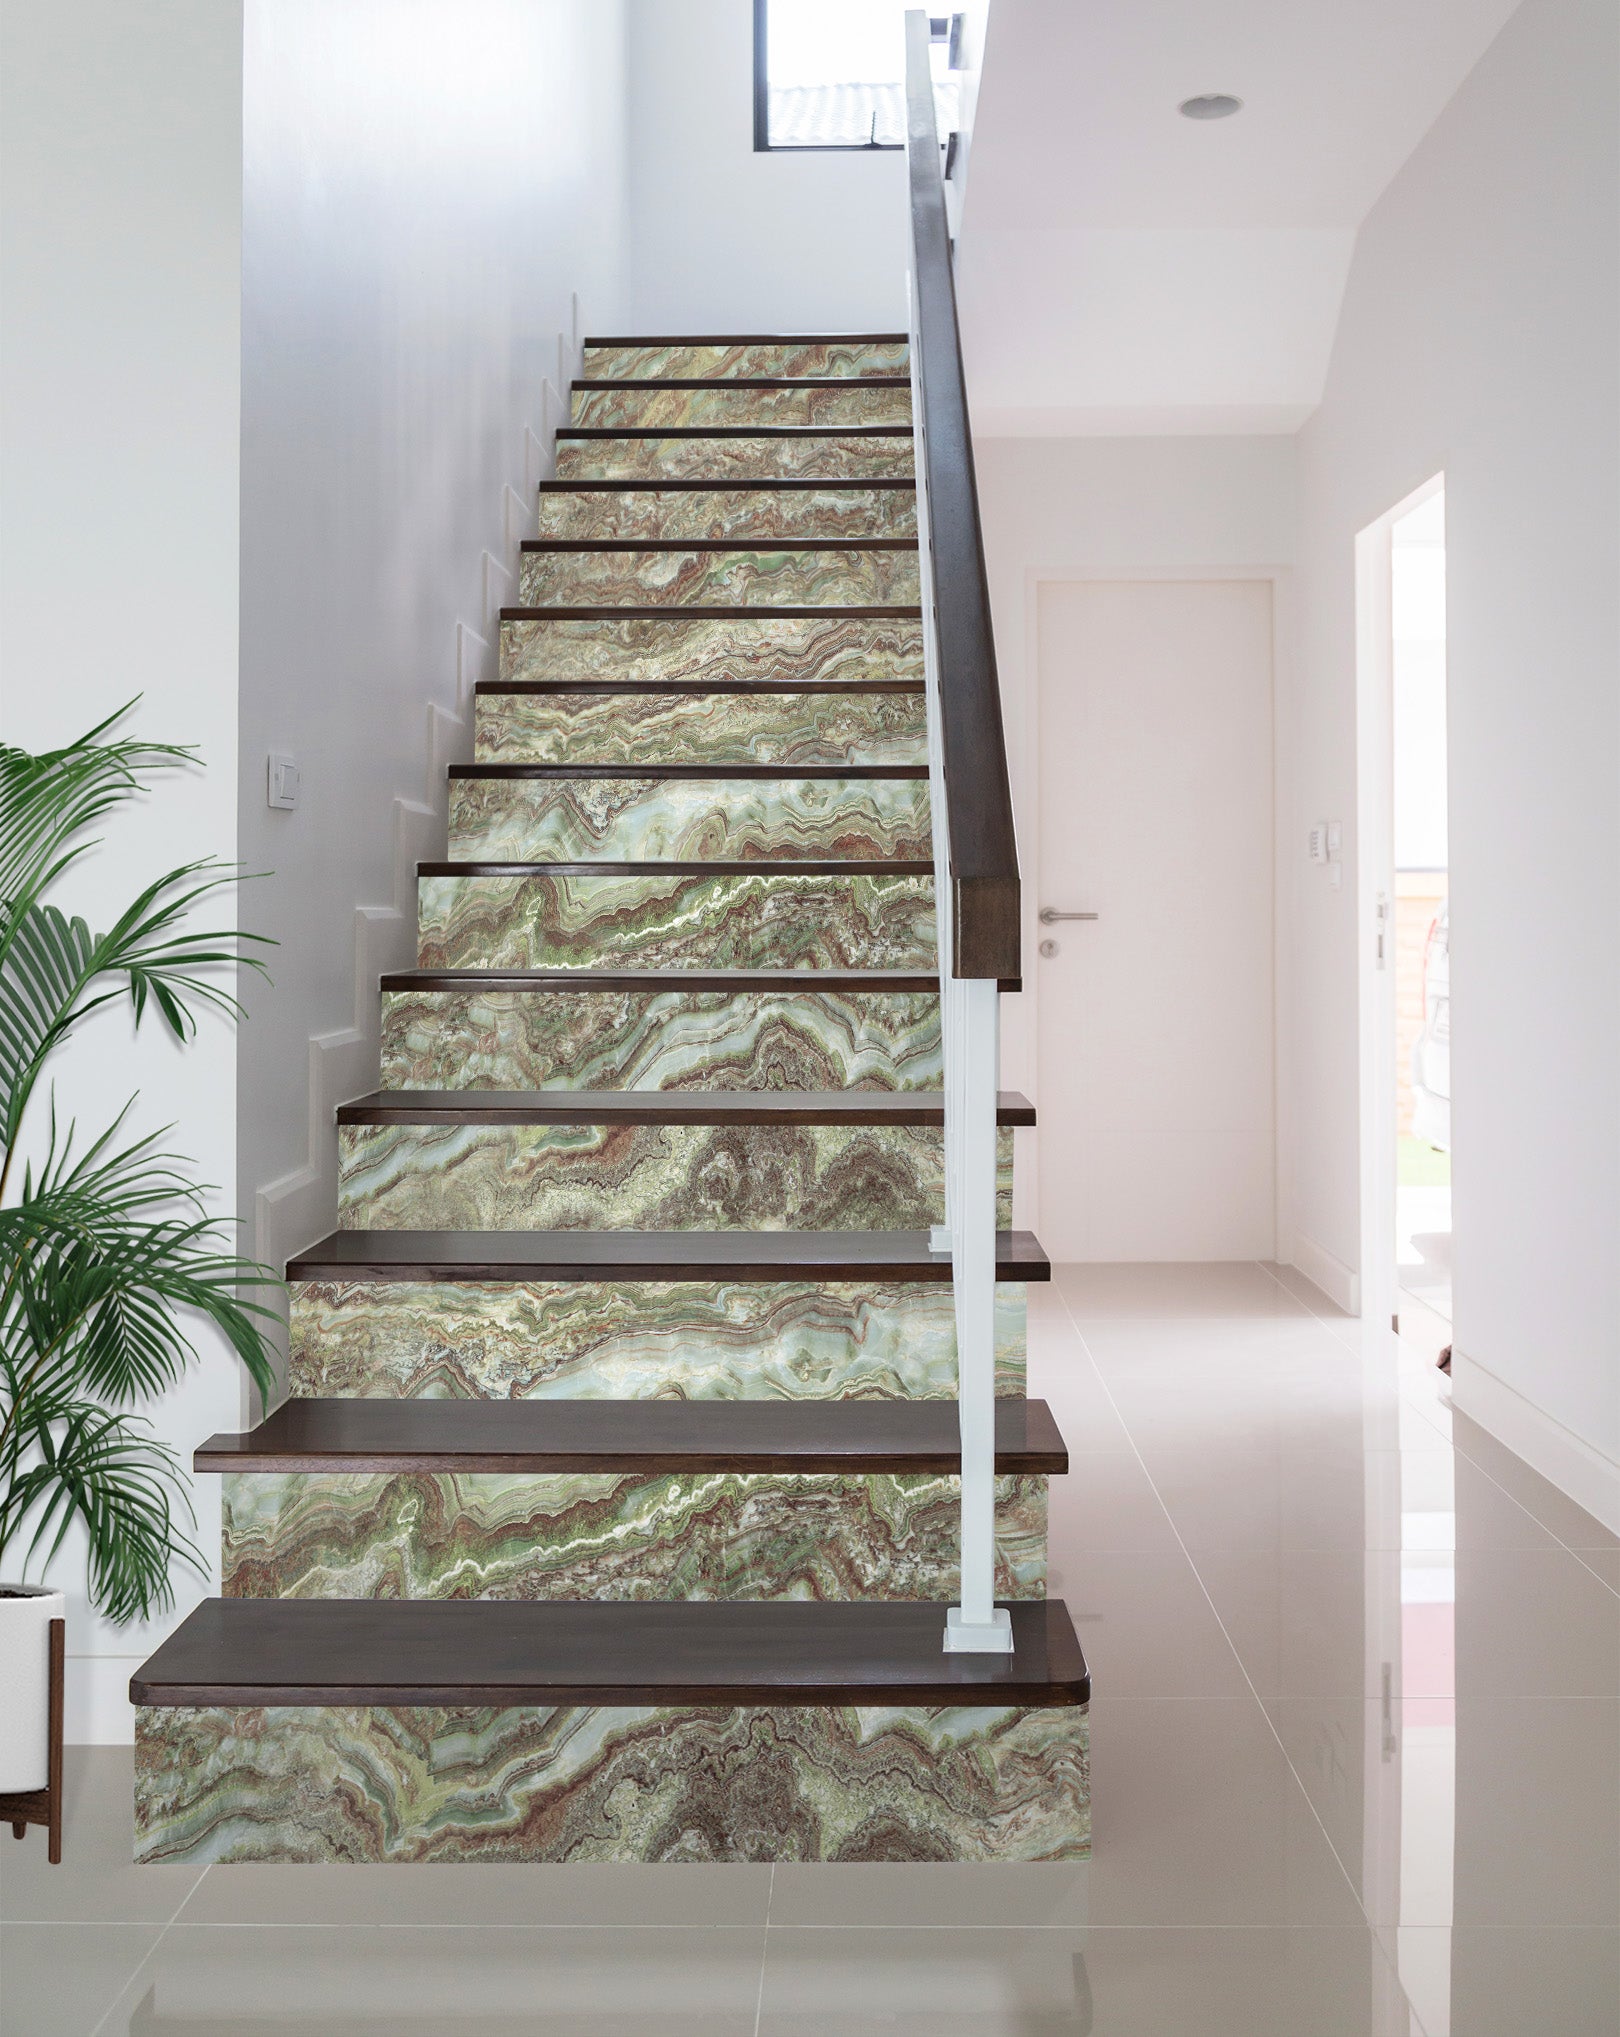 3D Green Irregular Horizontal 576 Stair Risers